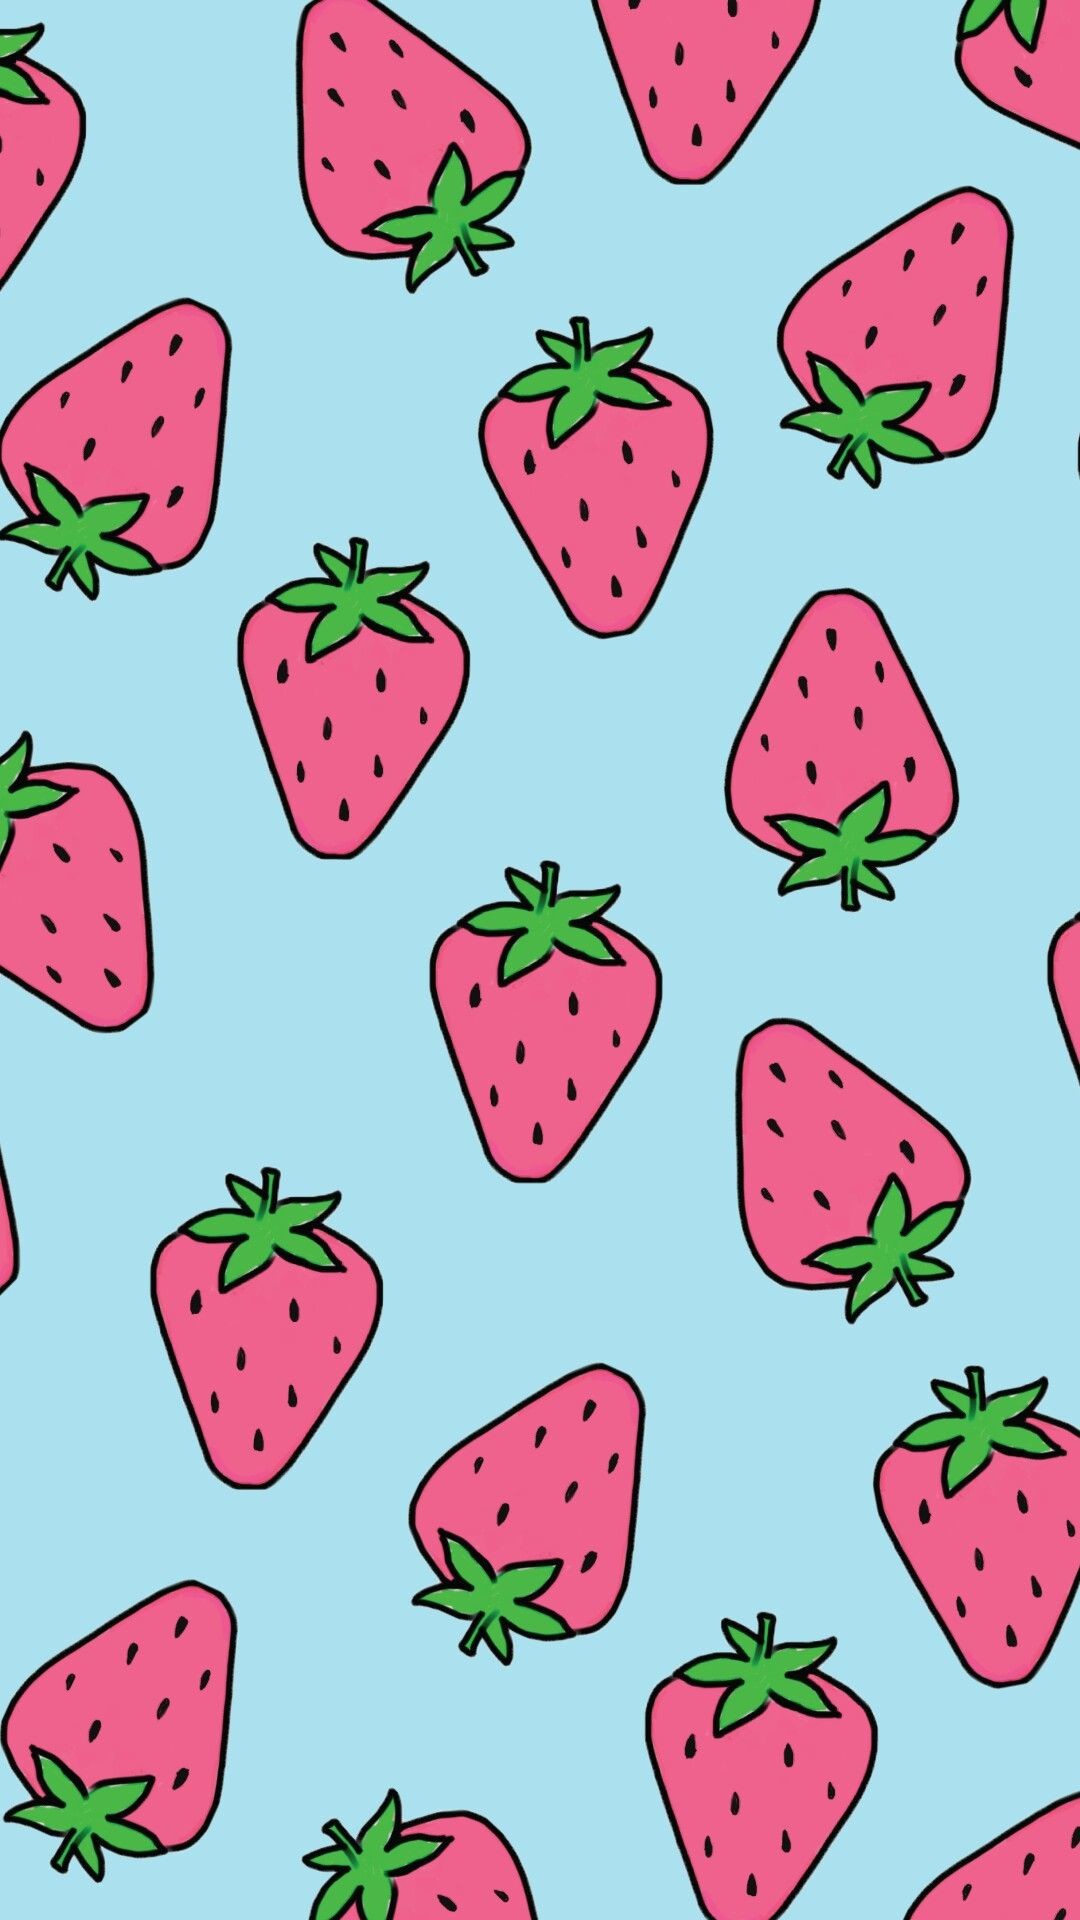 かわいいイチゴの壁紙,イチゴ,ピンク,パターン,フルーツ,スイカ